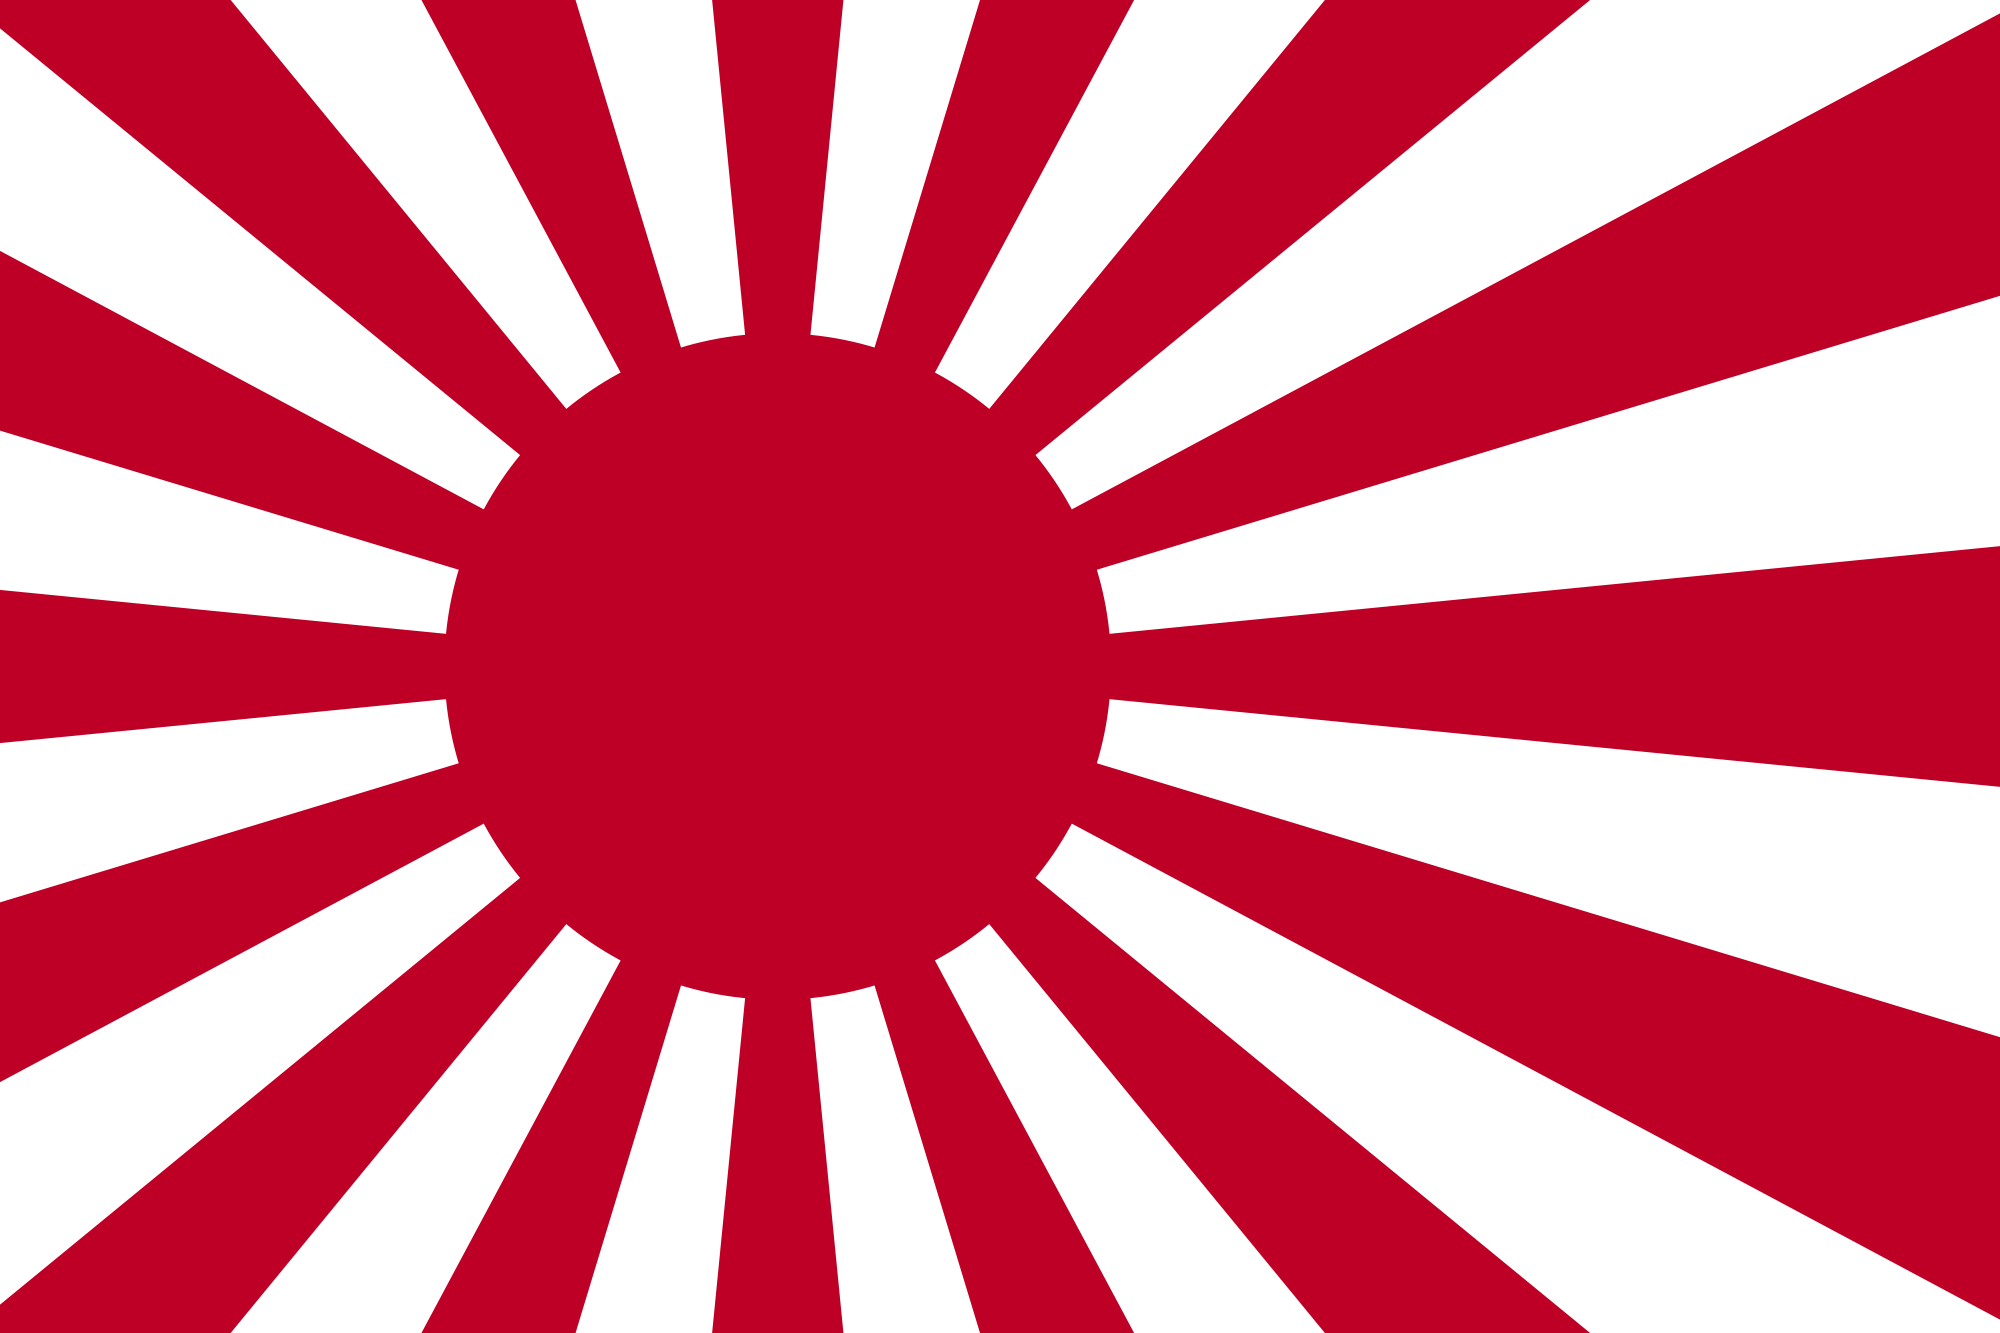 File:Japan flag - variant.png